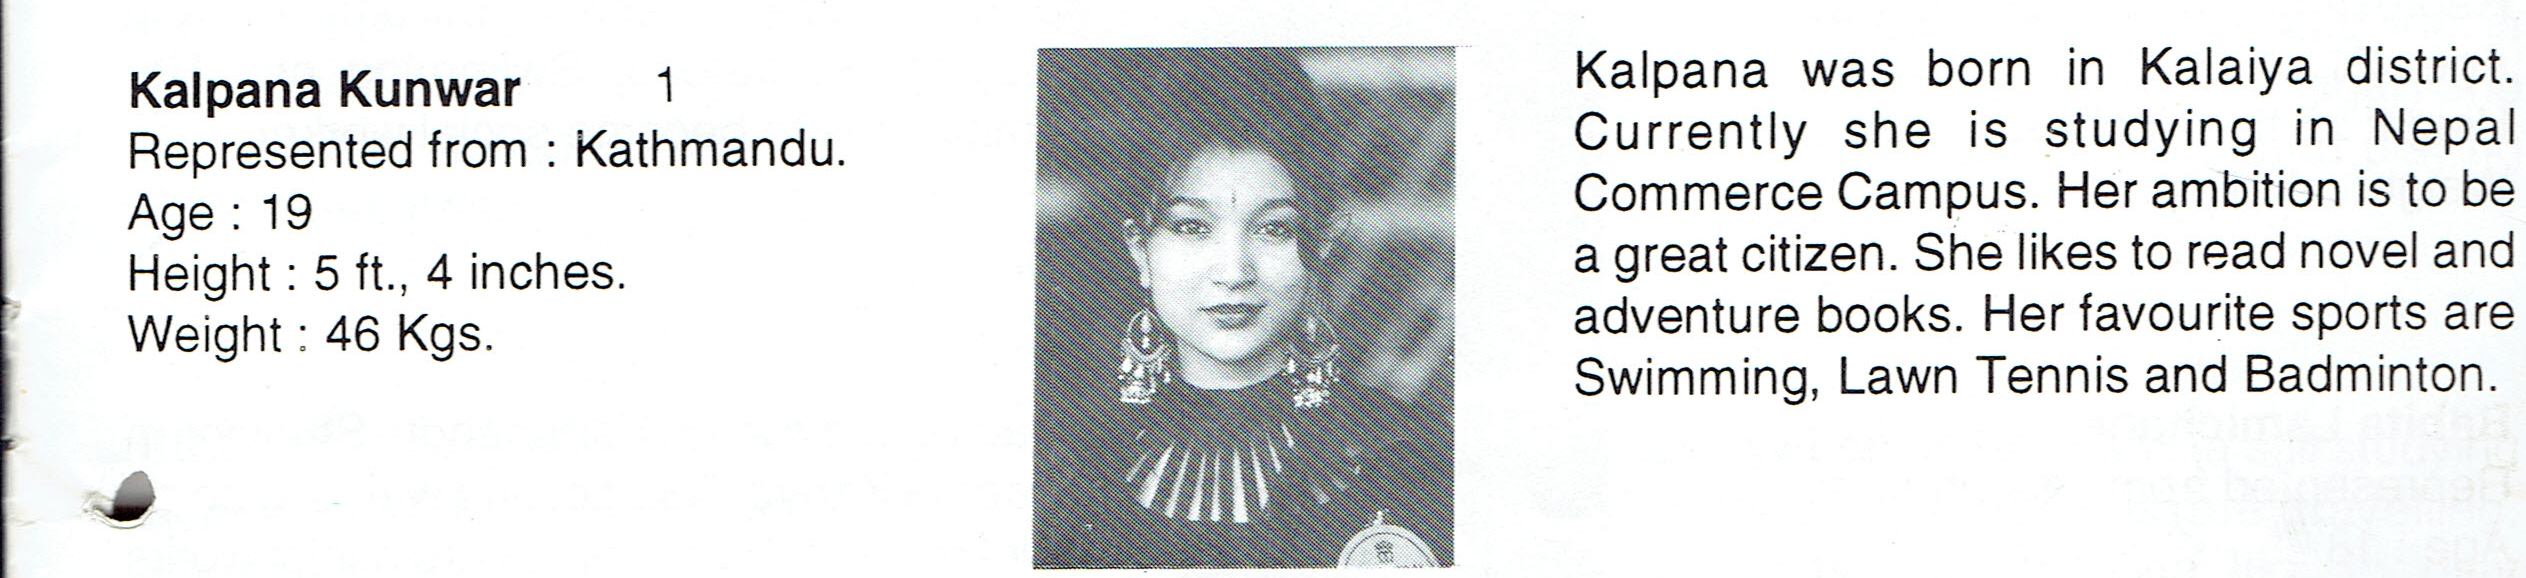 Kalpana Kunwar